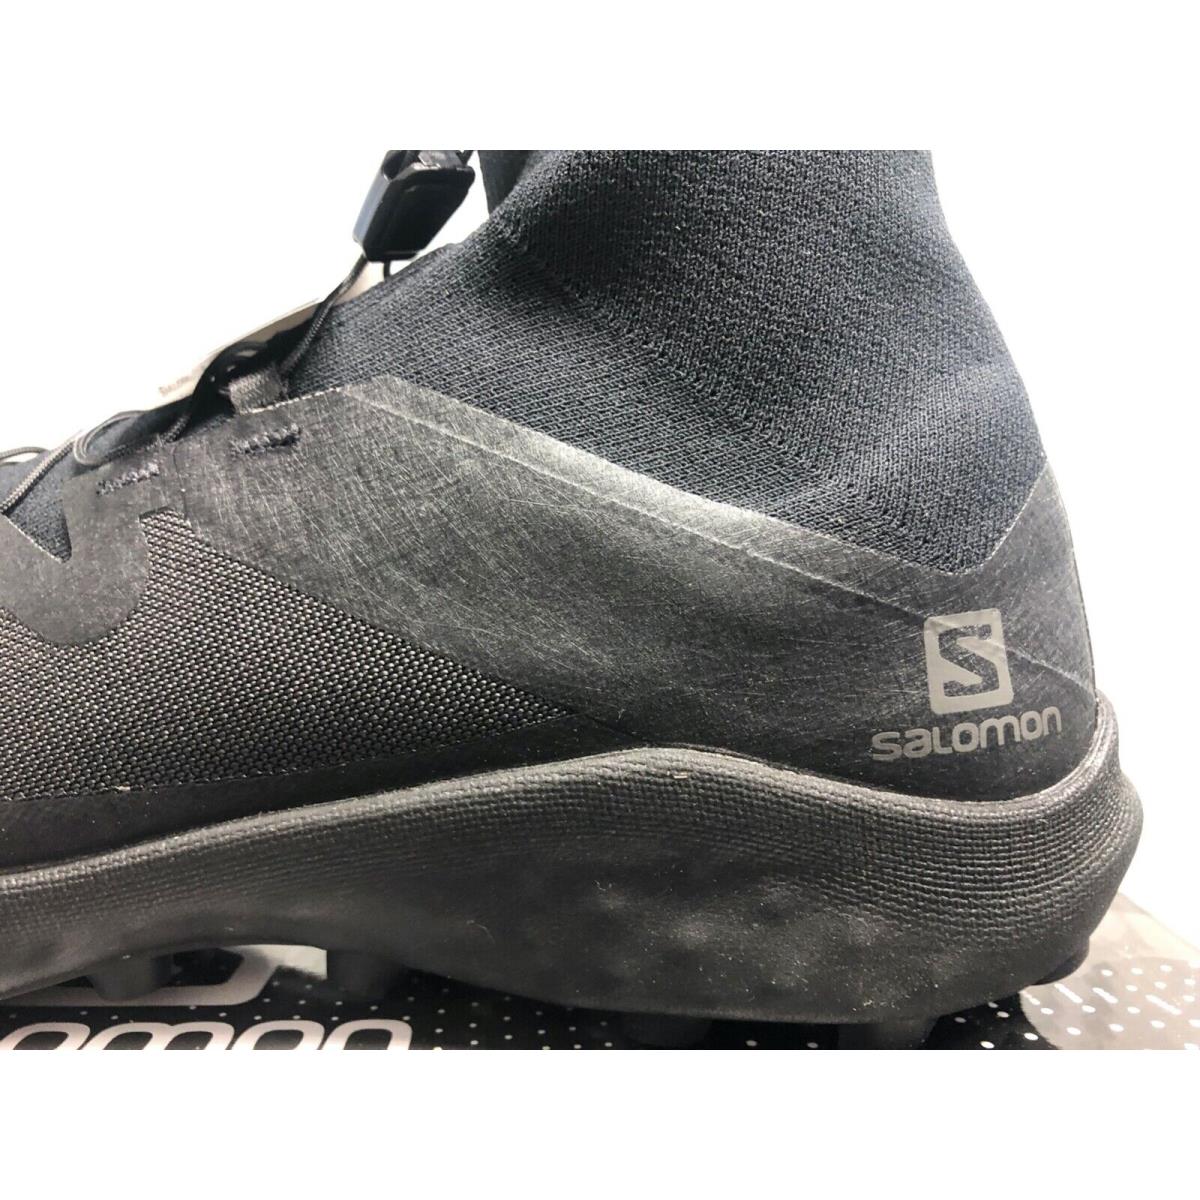 Salomon shoes  - Black 1